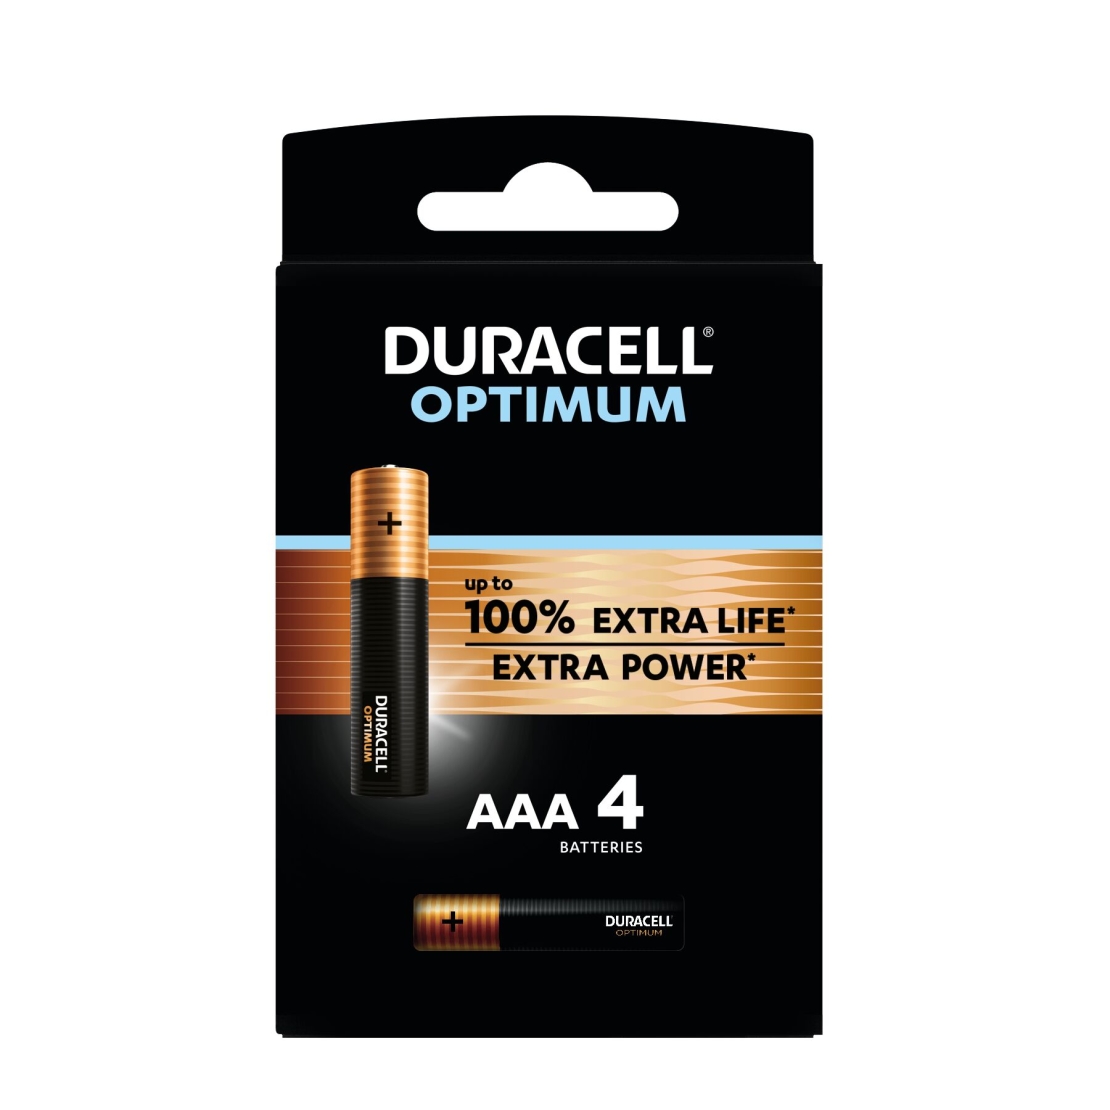 דורסל / DURACELL  - סוללות AAA אופטימום אקסטרה פאוור (4 יחידות)